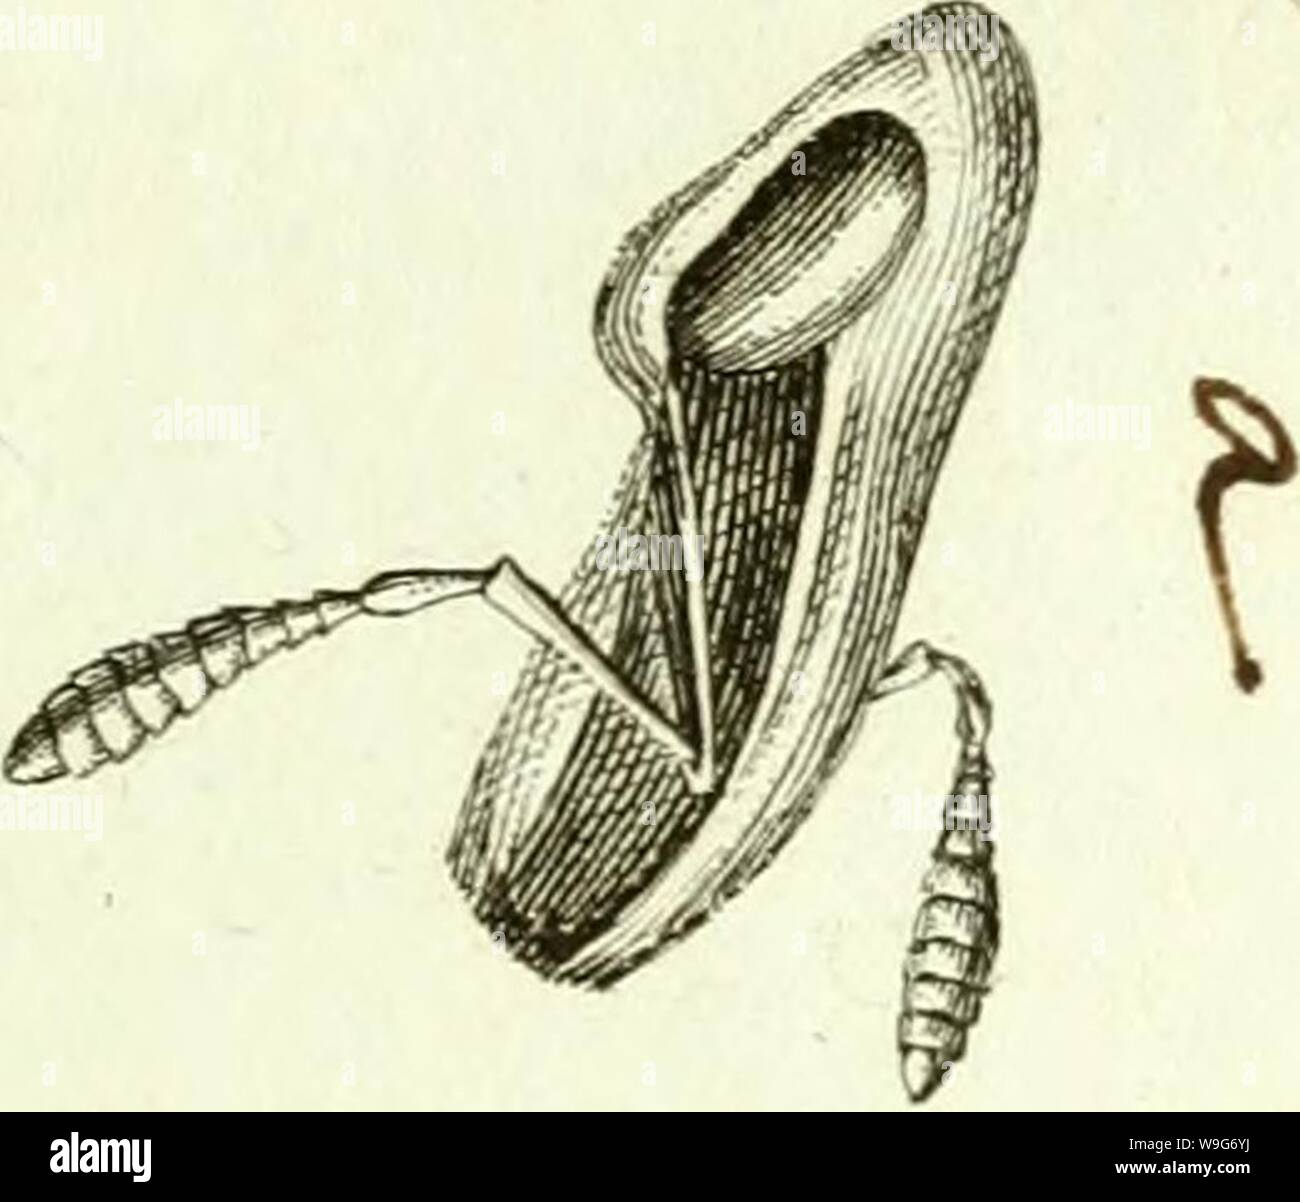 Immagine di archivio da pagina 126 di [Curculionidae] (1800) Foto Stock